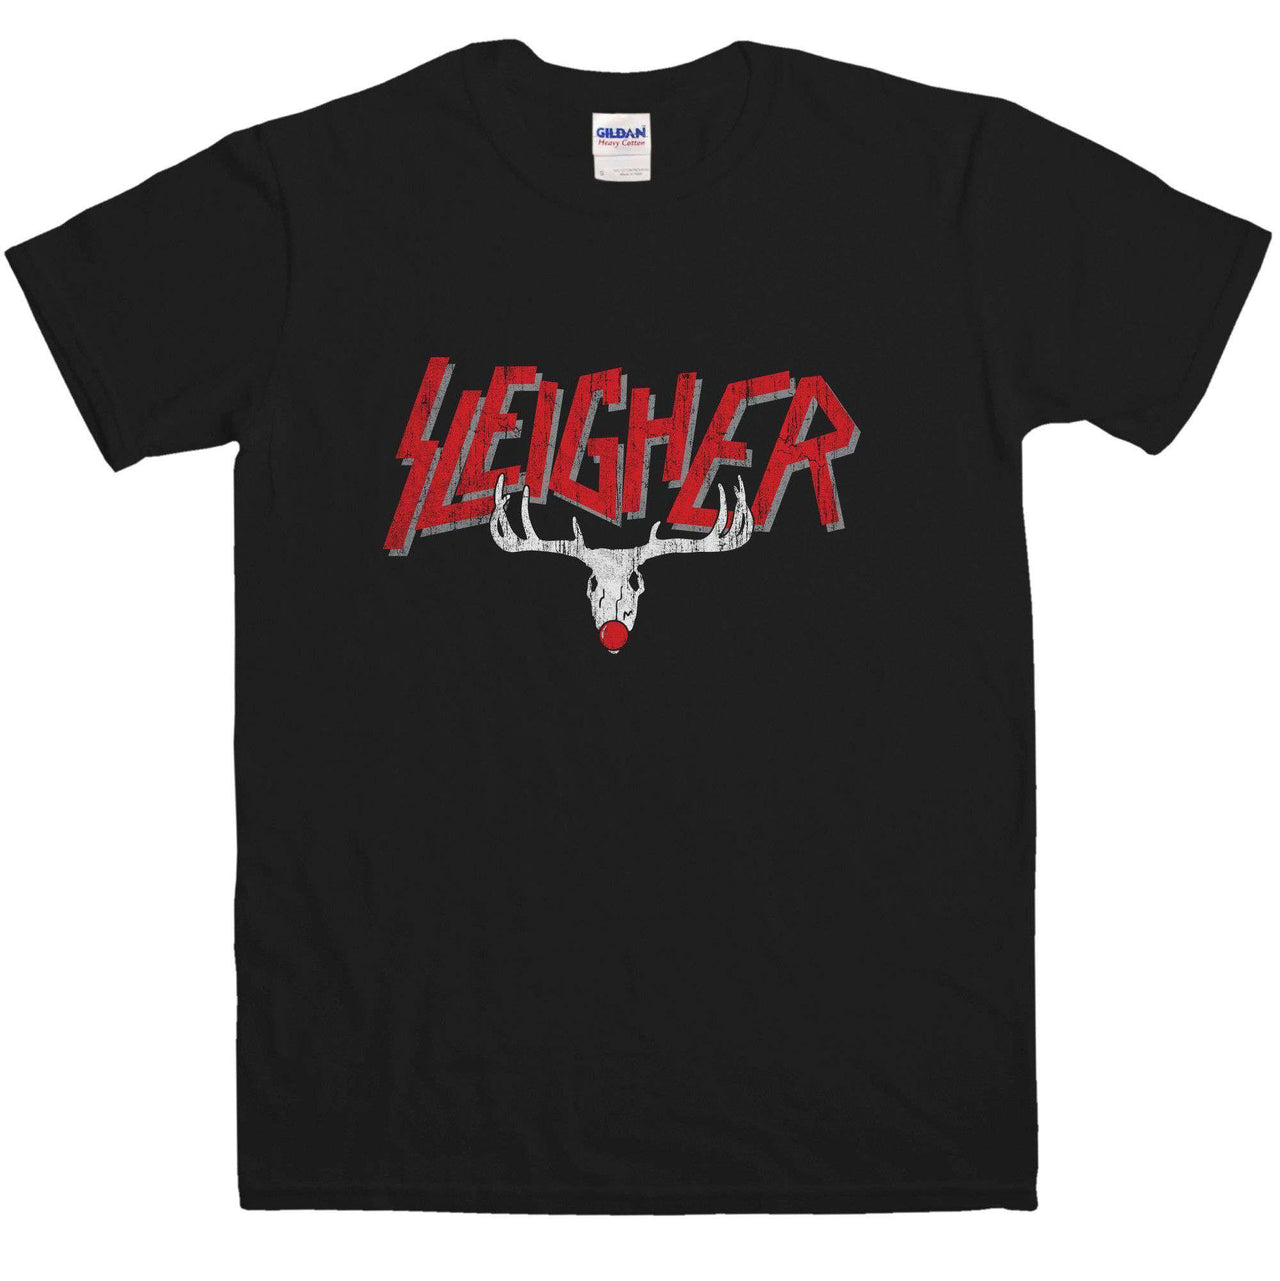 Sleigher Unisex T-Shirt For Men And Women 8Ball